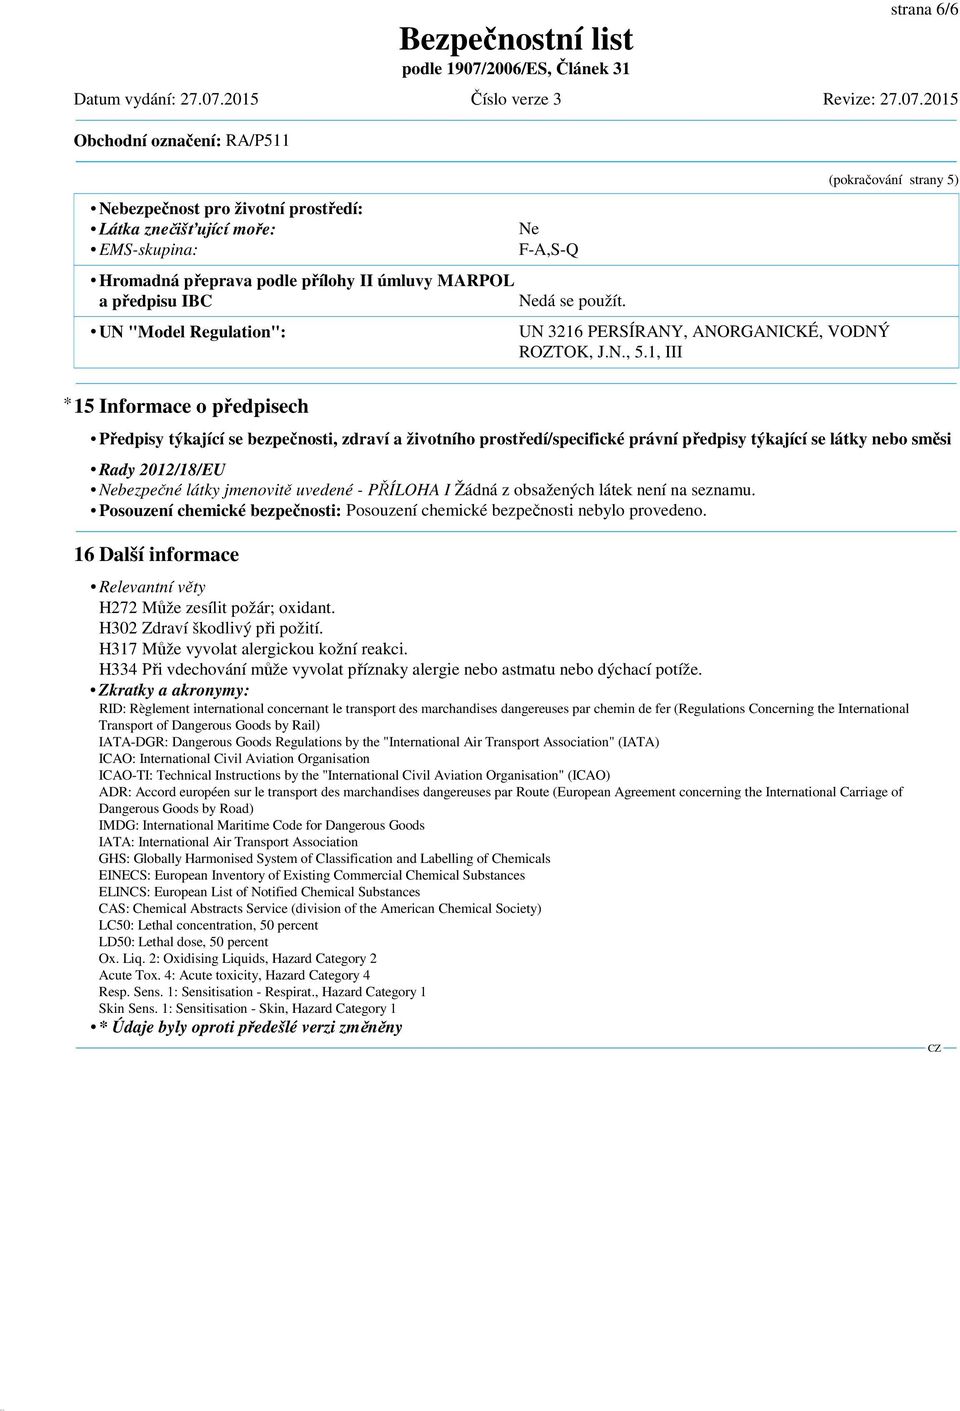 1, III (pokračování strany 5) * 15 Informace o předpisech Předpisy týkající se bezpečnosti, zdraví a životního prostředí/specifické právní předpisy týkající se látky nebo směsi Rady 2012/18/EU